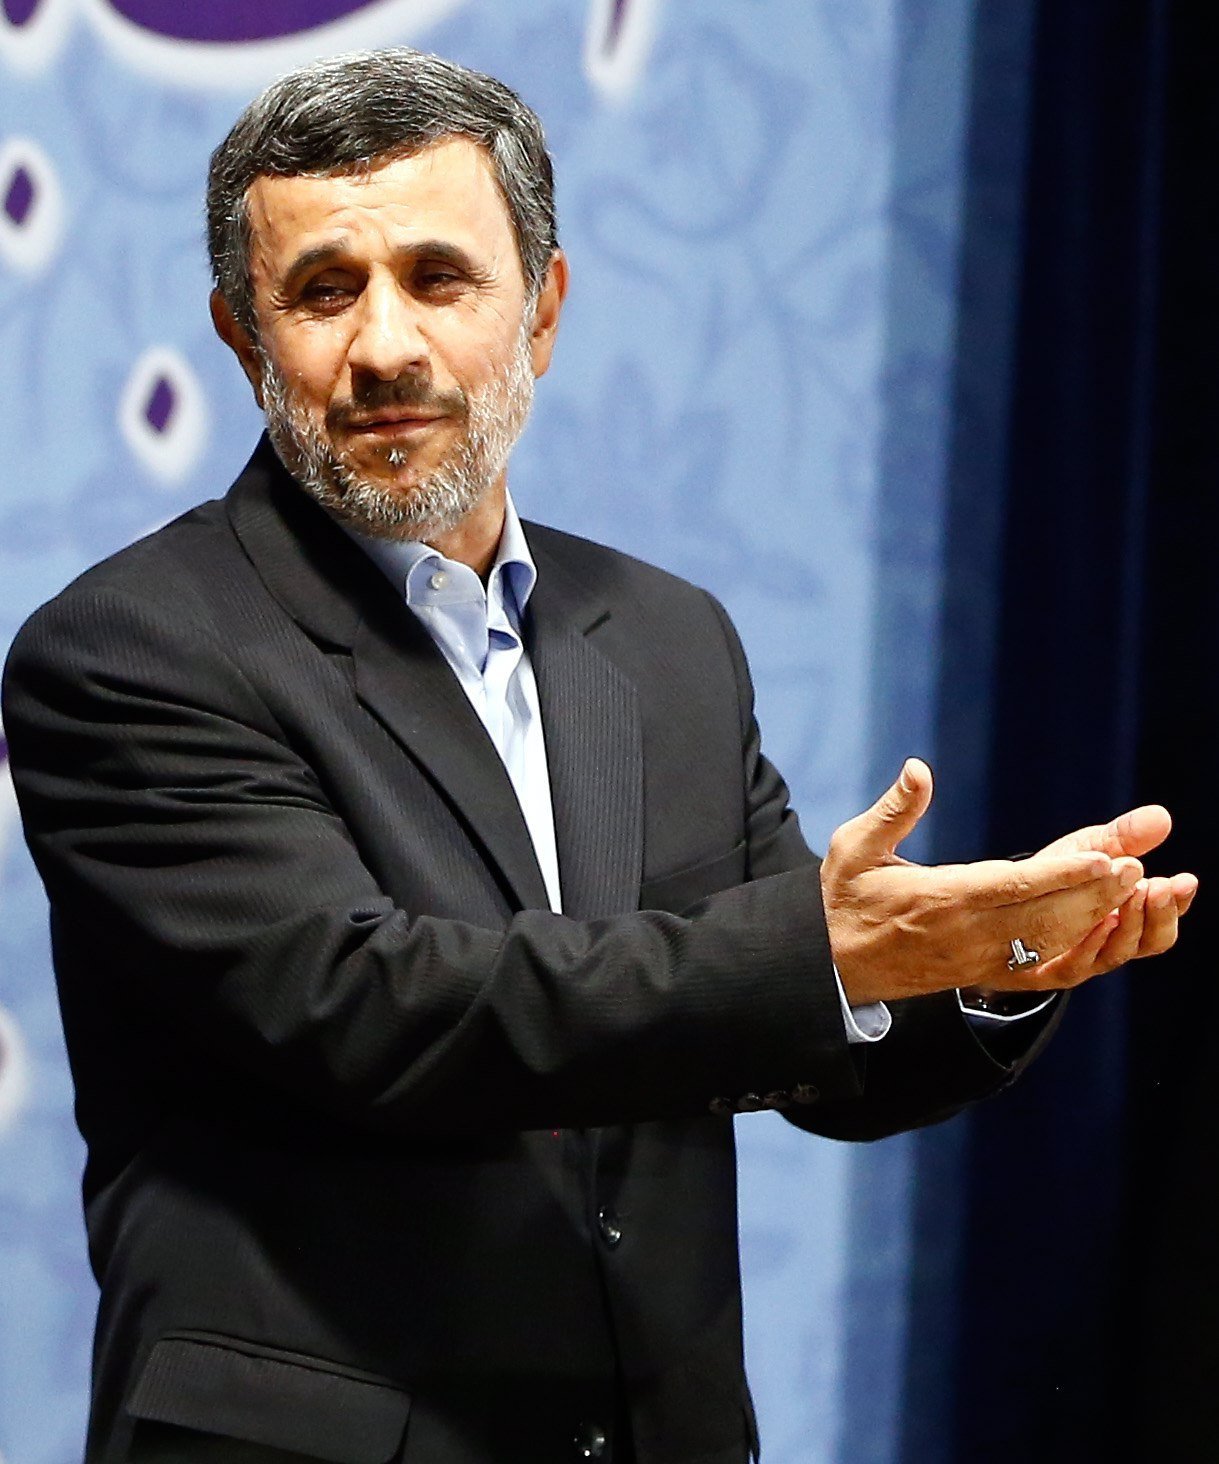 Ahmadinejad, descartat per imperatiu clerical